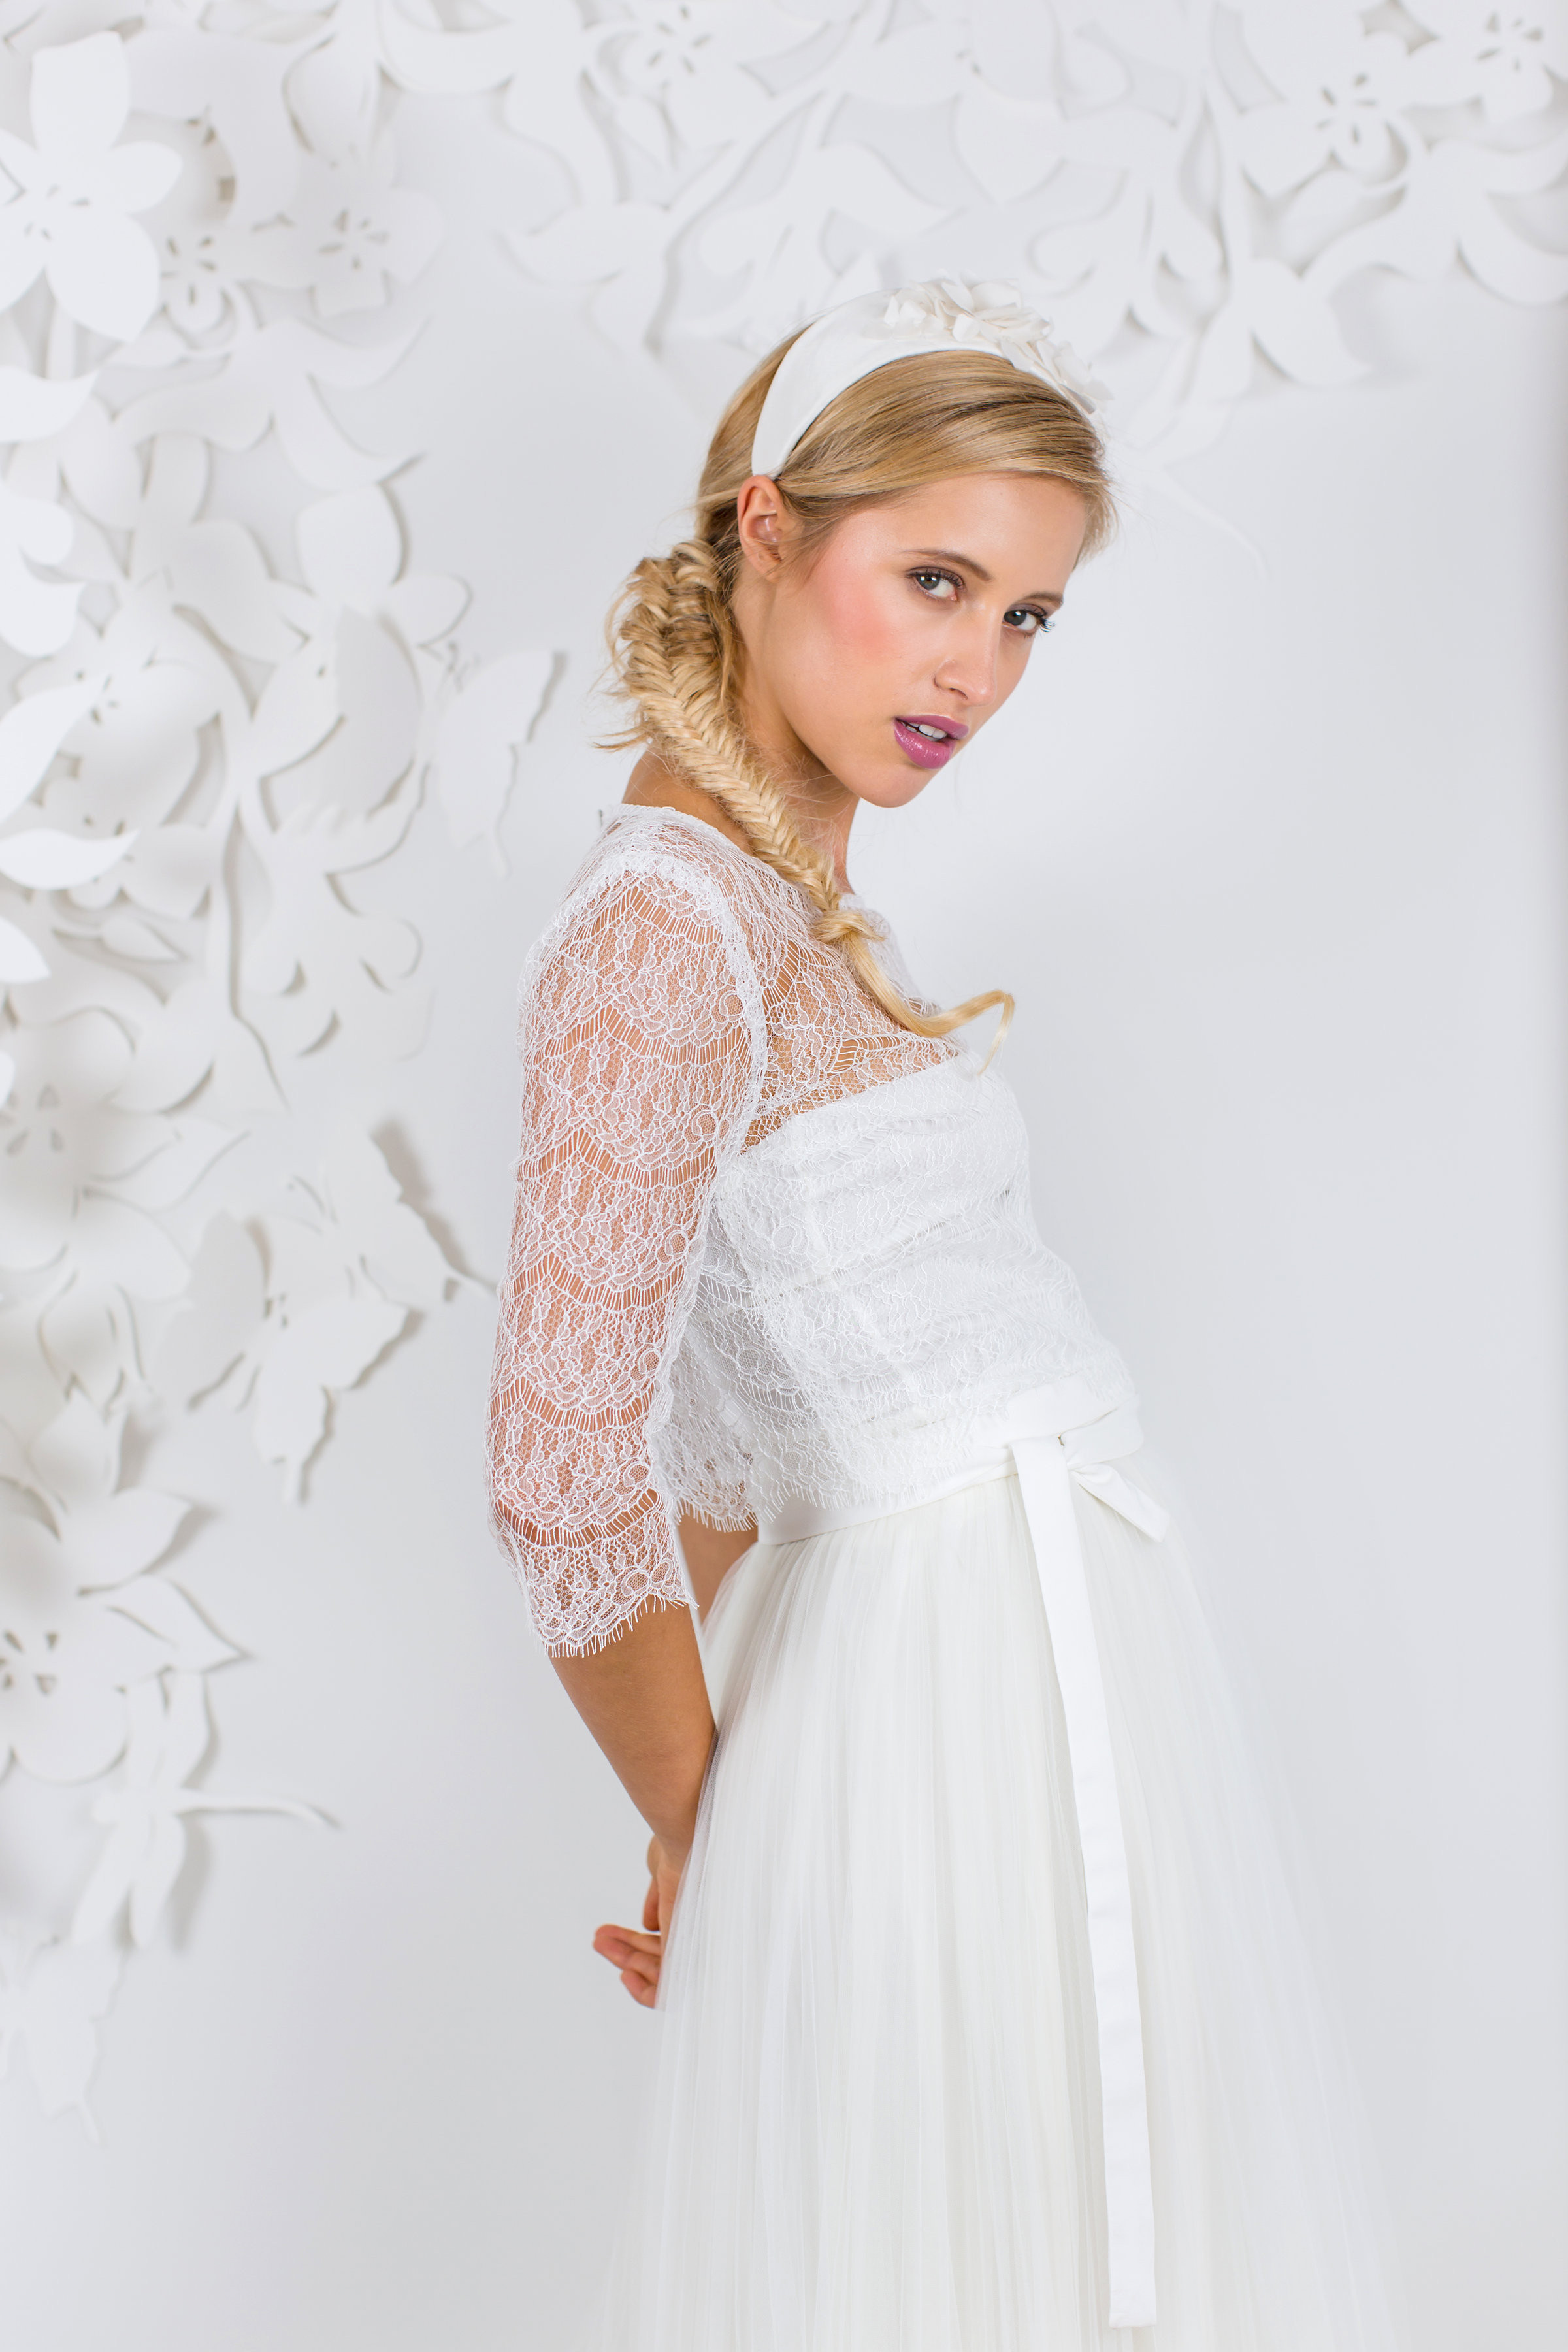 Hochzeitskleid Standesamt
 Brautkleid Standesamt Die schönsten Kleider für